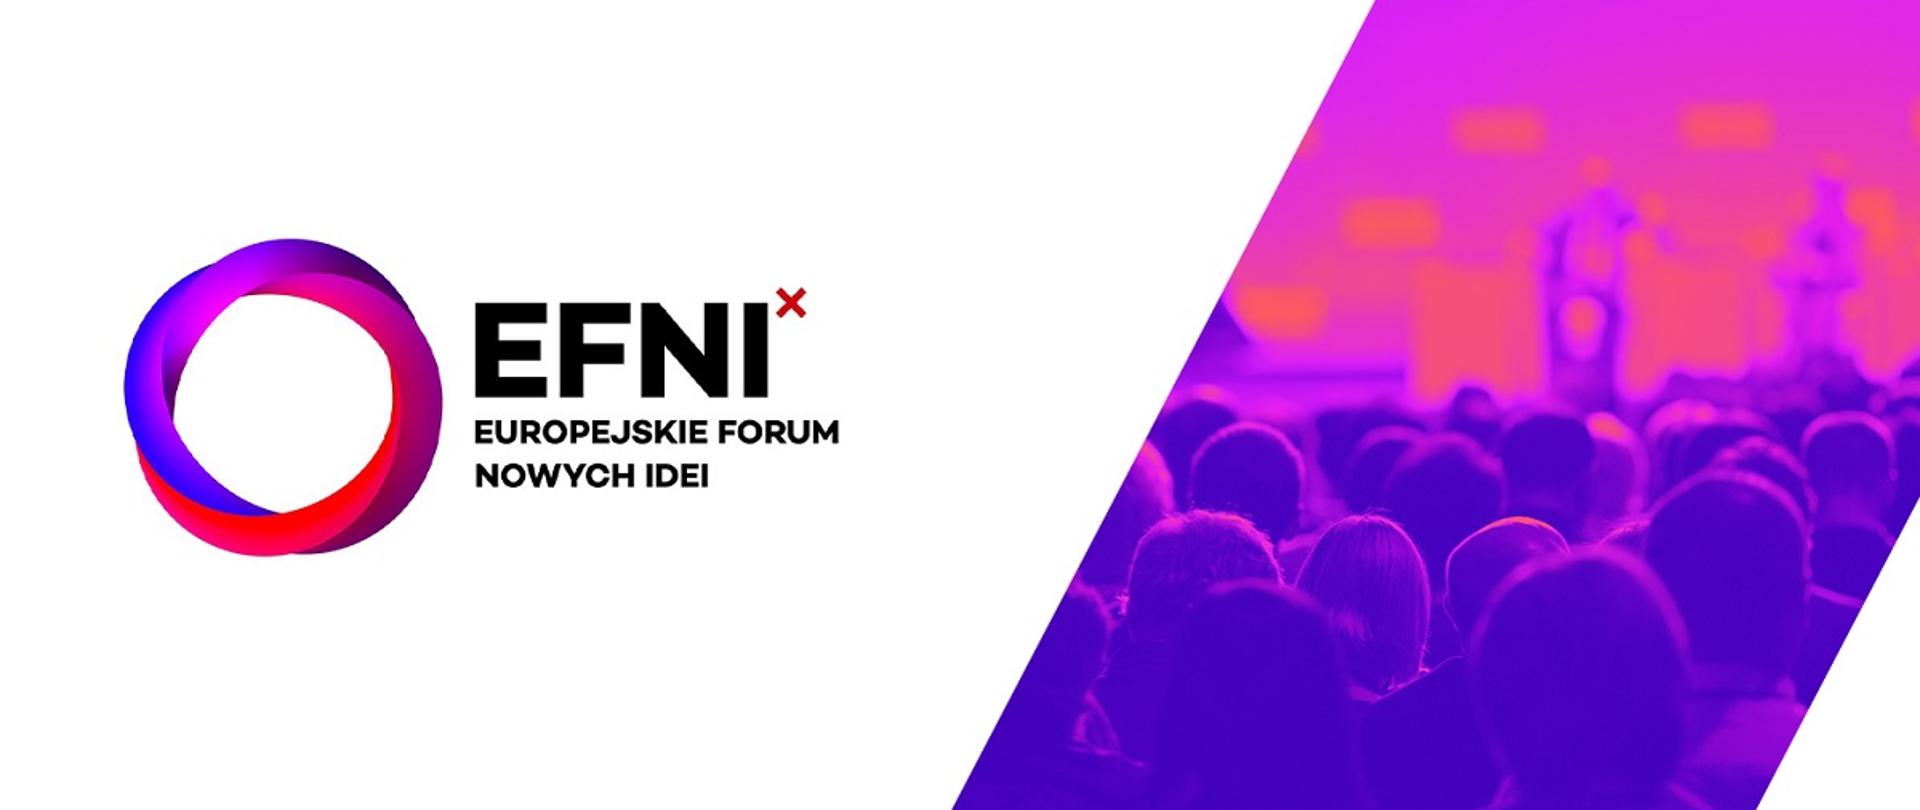 Logo Europejskiego Forum Nowych Idei, po prawej stronie grafiki zdjęcie przedstawiające tłum ludzi 